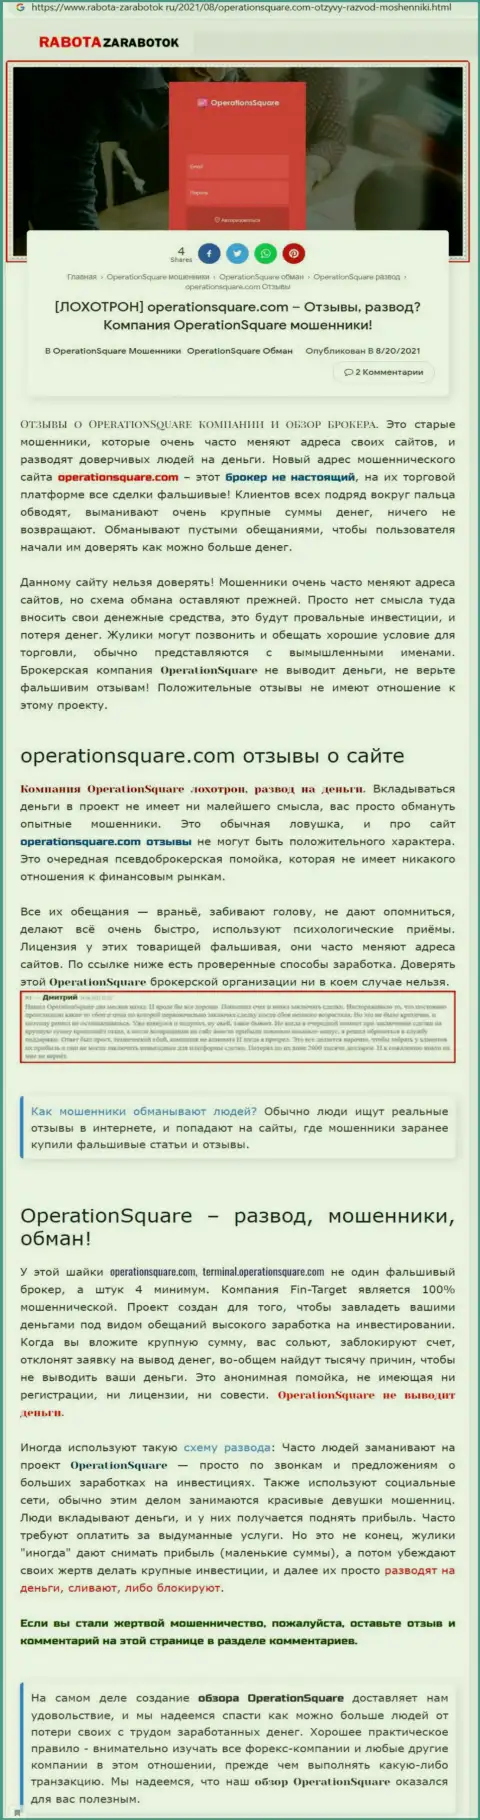 OperationSquare Com - это ЖУЛИКИ !!! Схемы надувательства и отзывы потерпевших